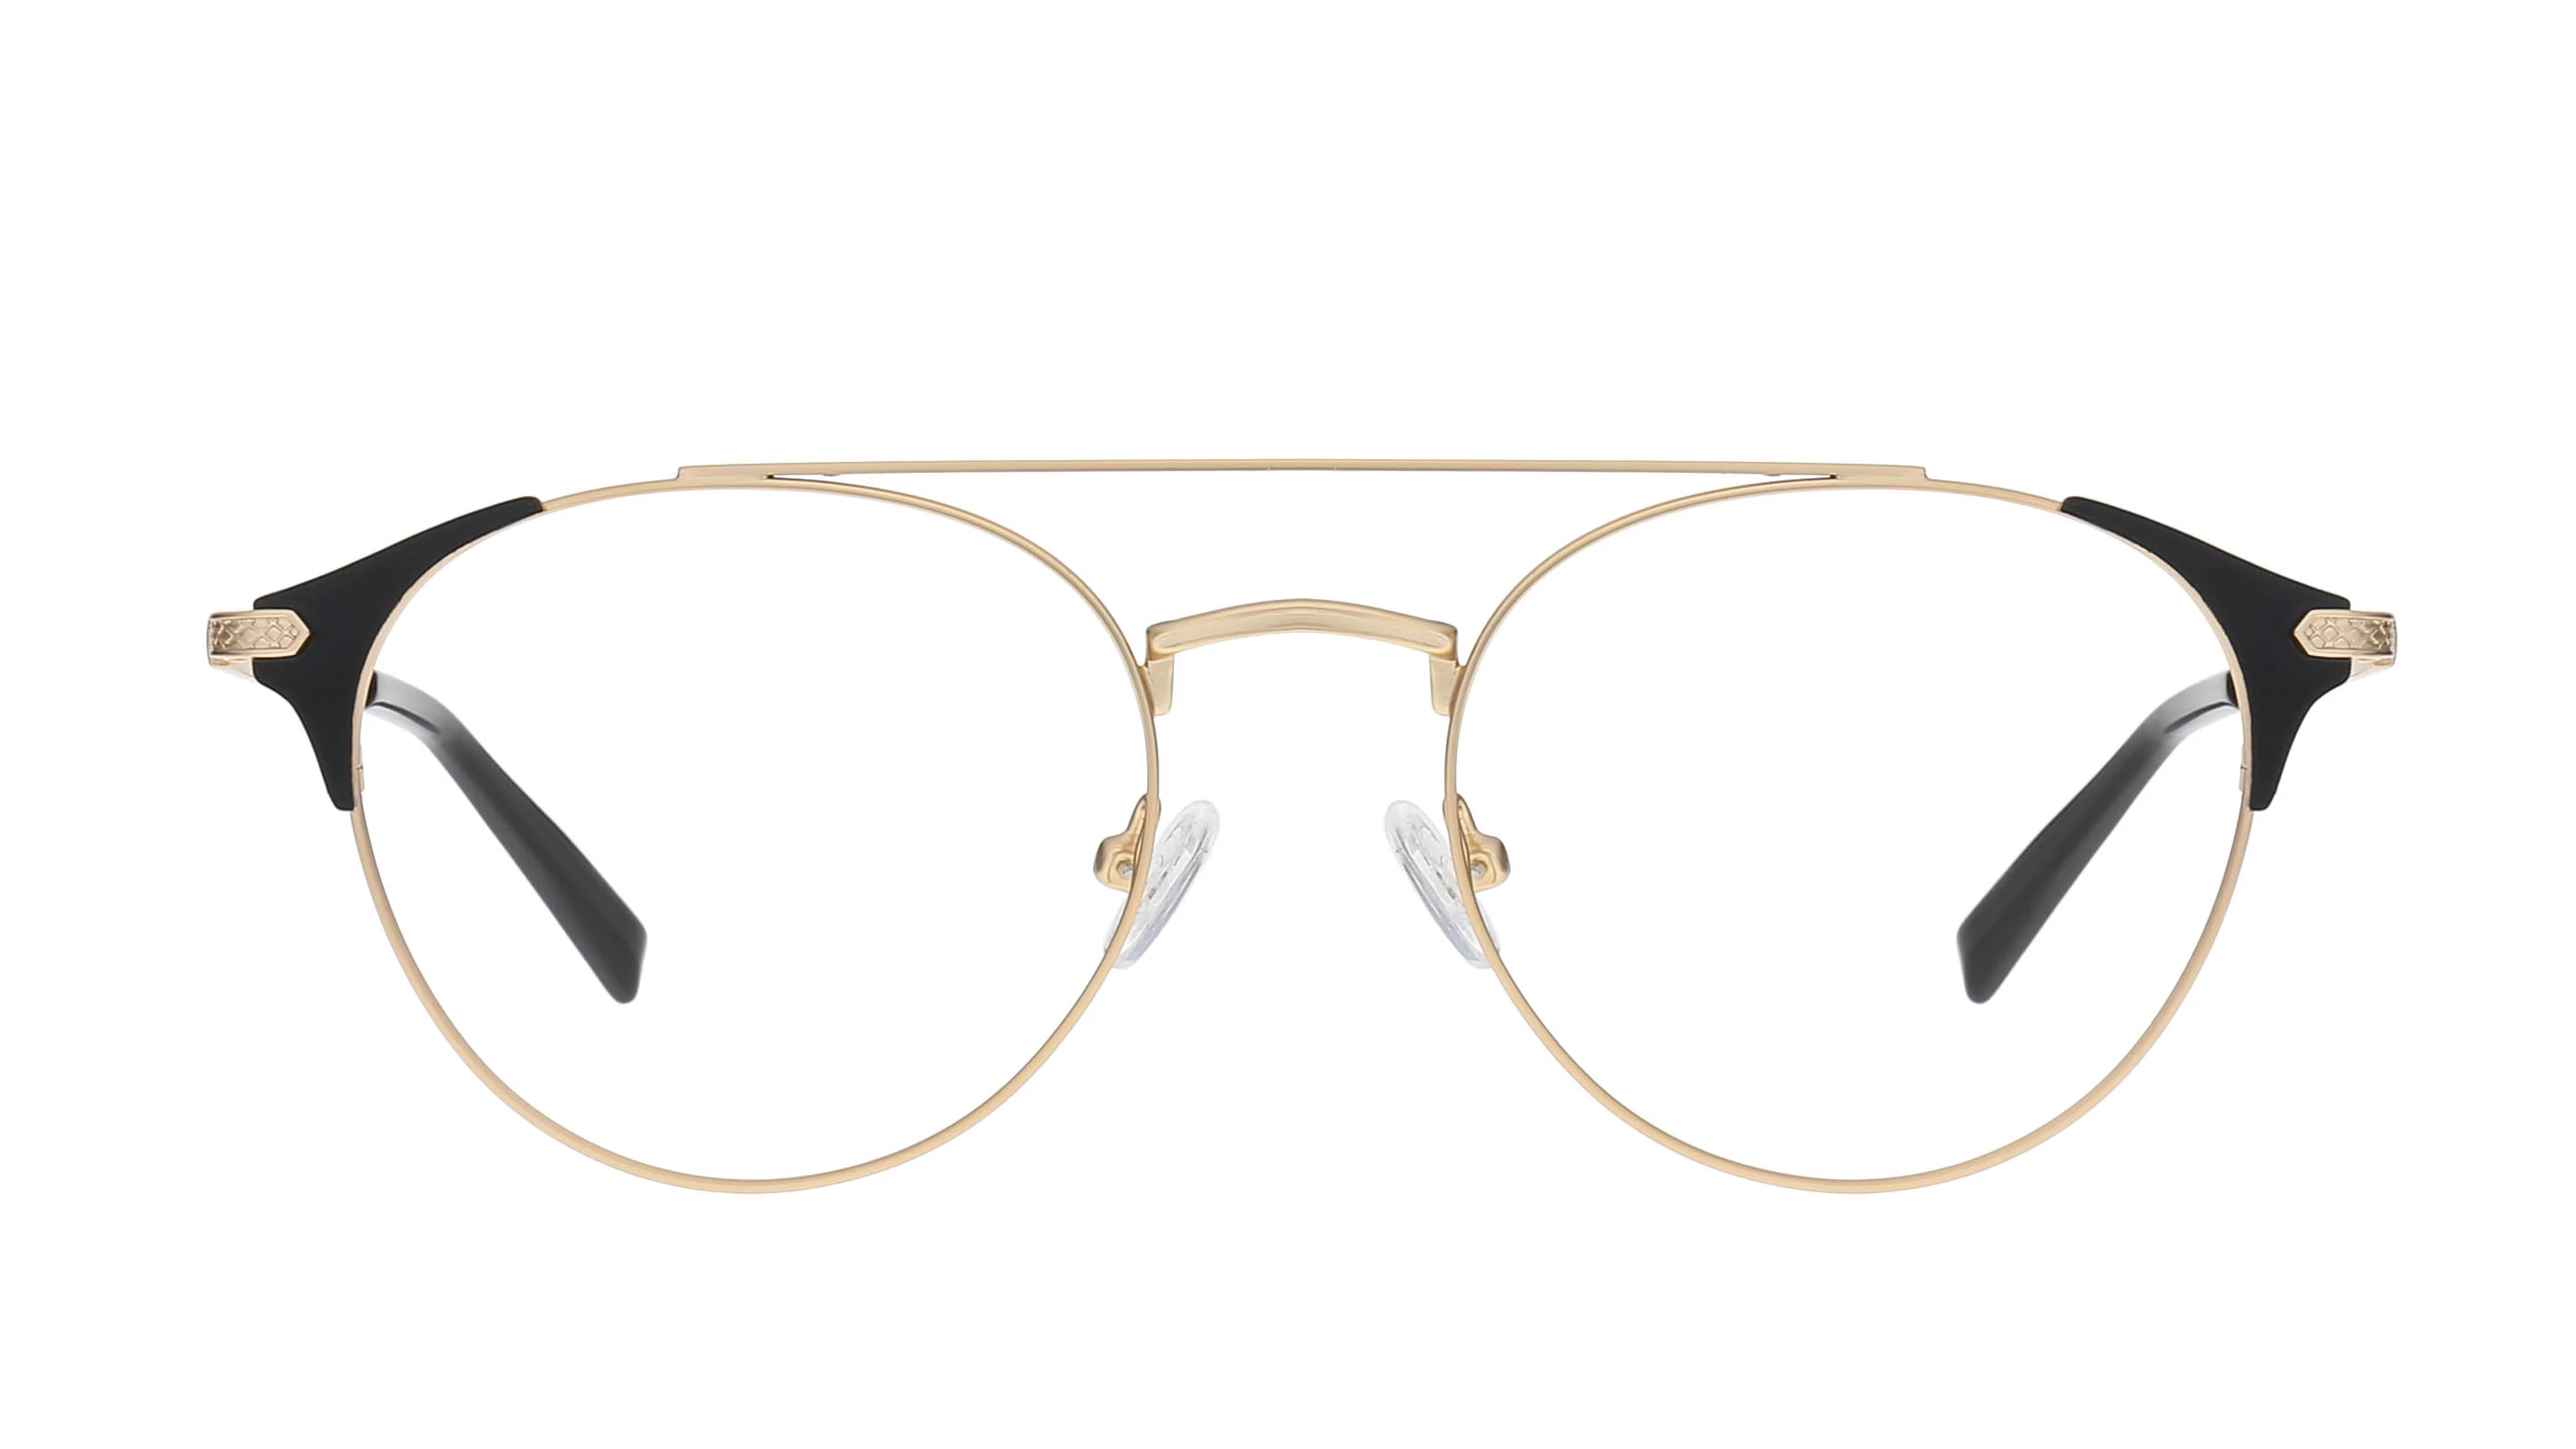 Wholesale Metal Glasses Frames LM1016